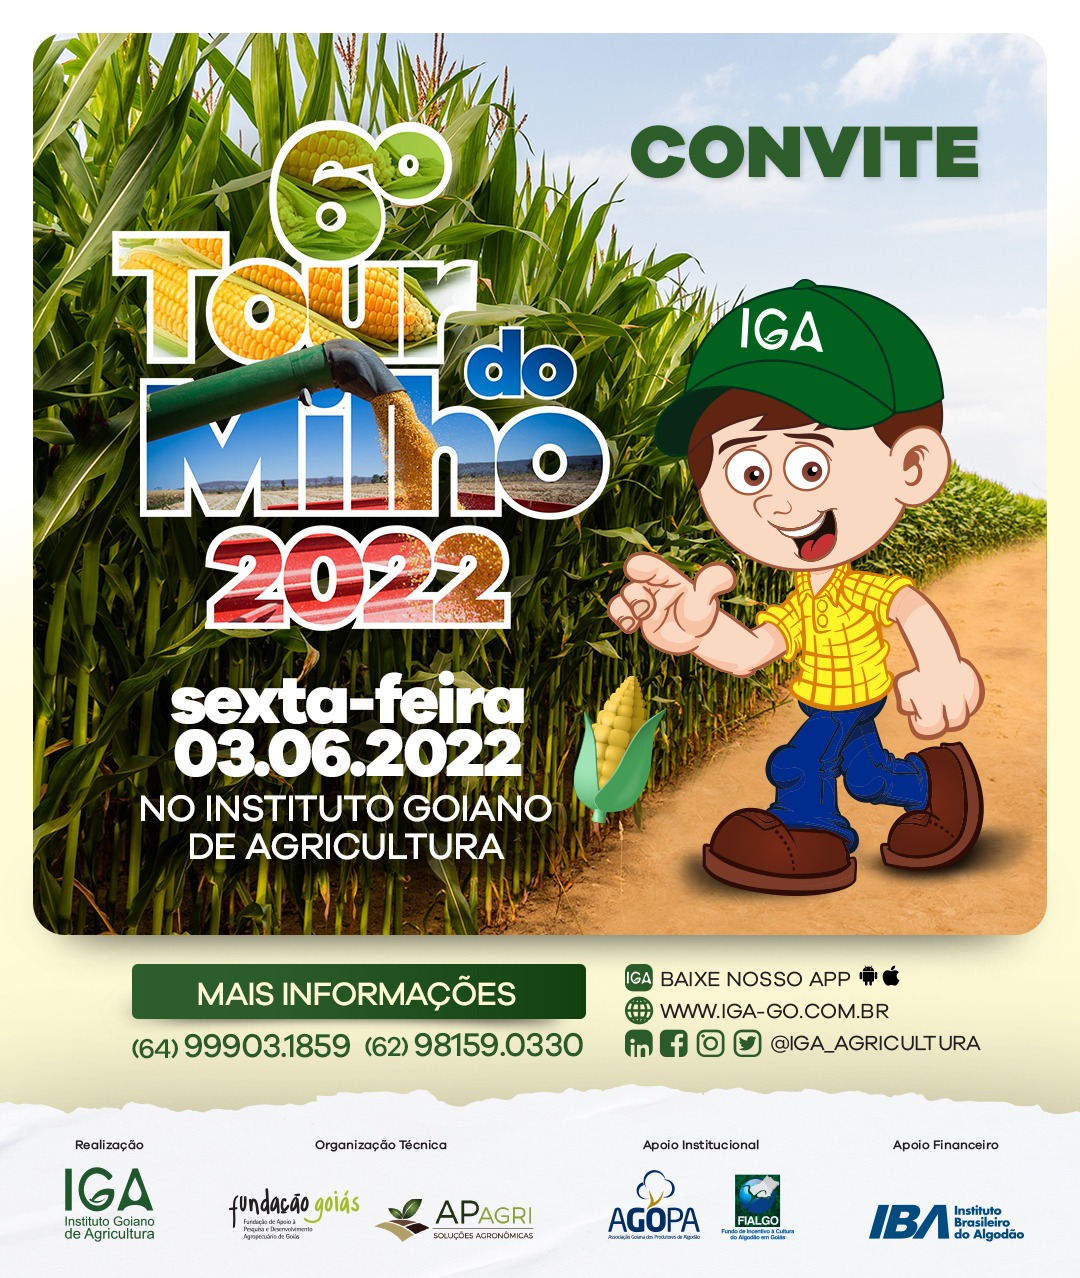 Convite tour do milho 2022